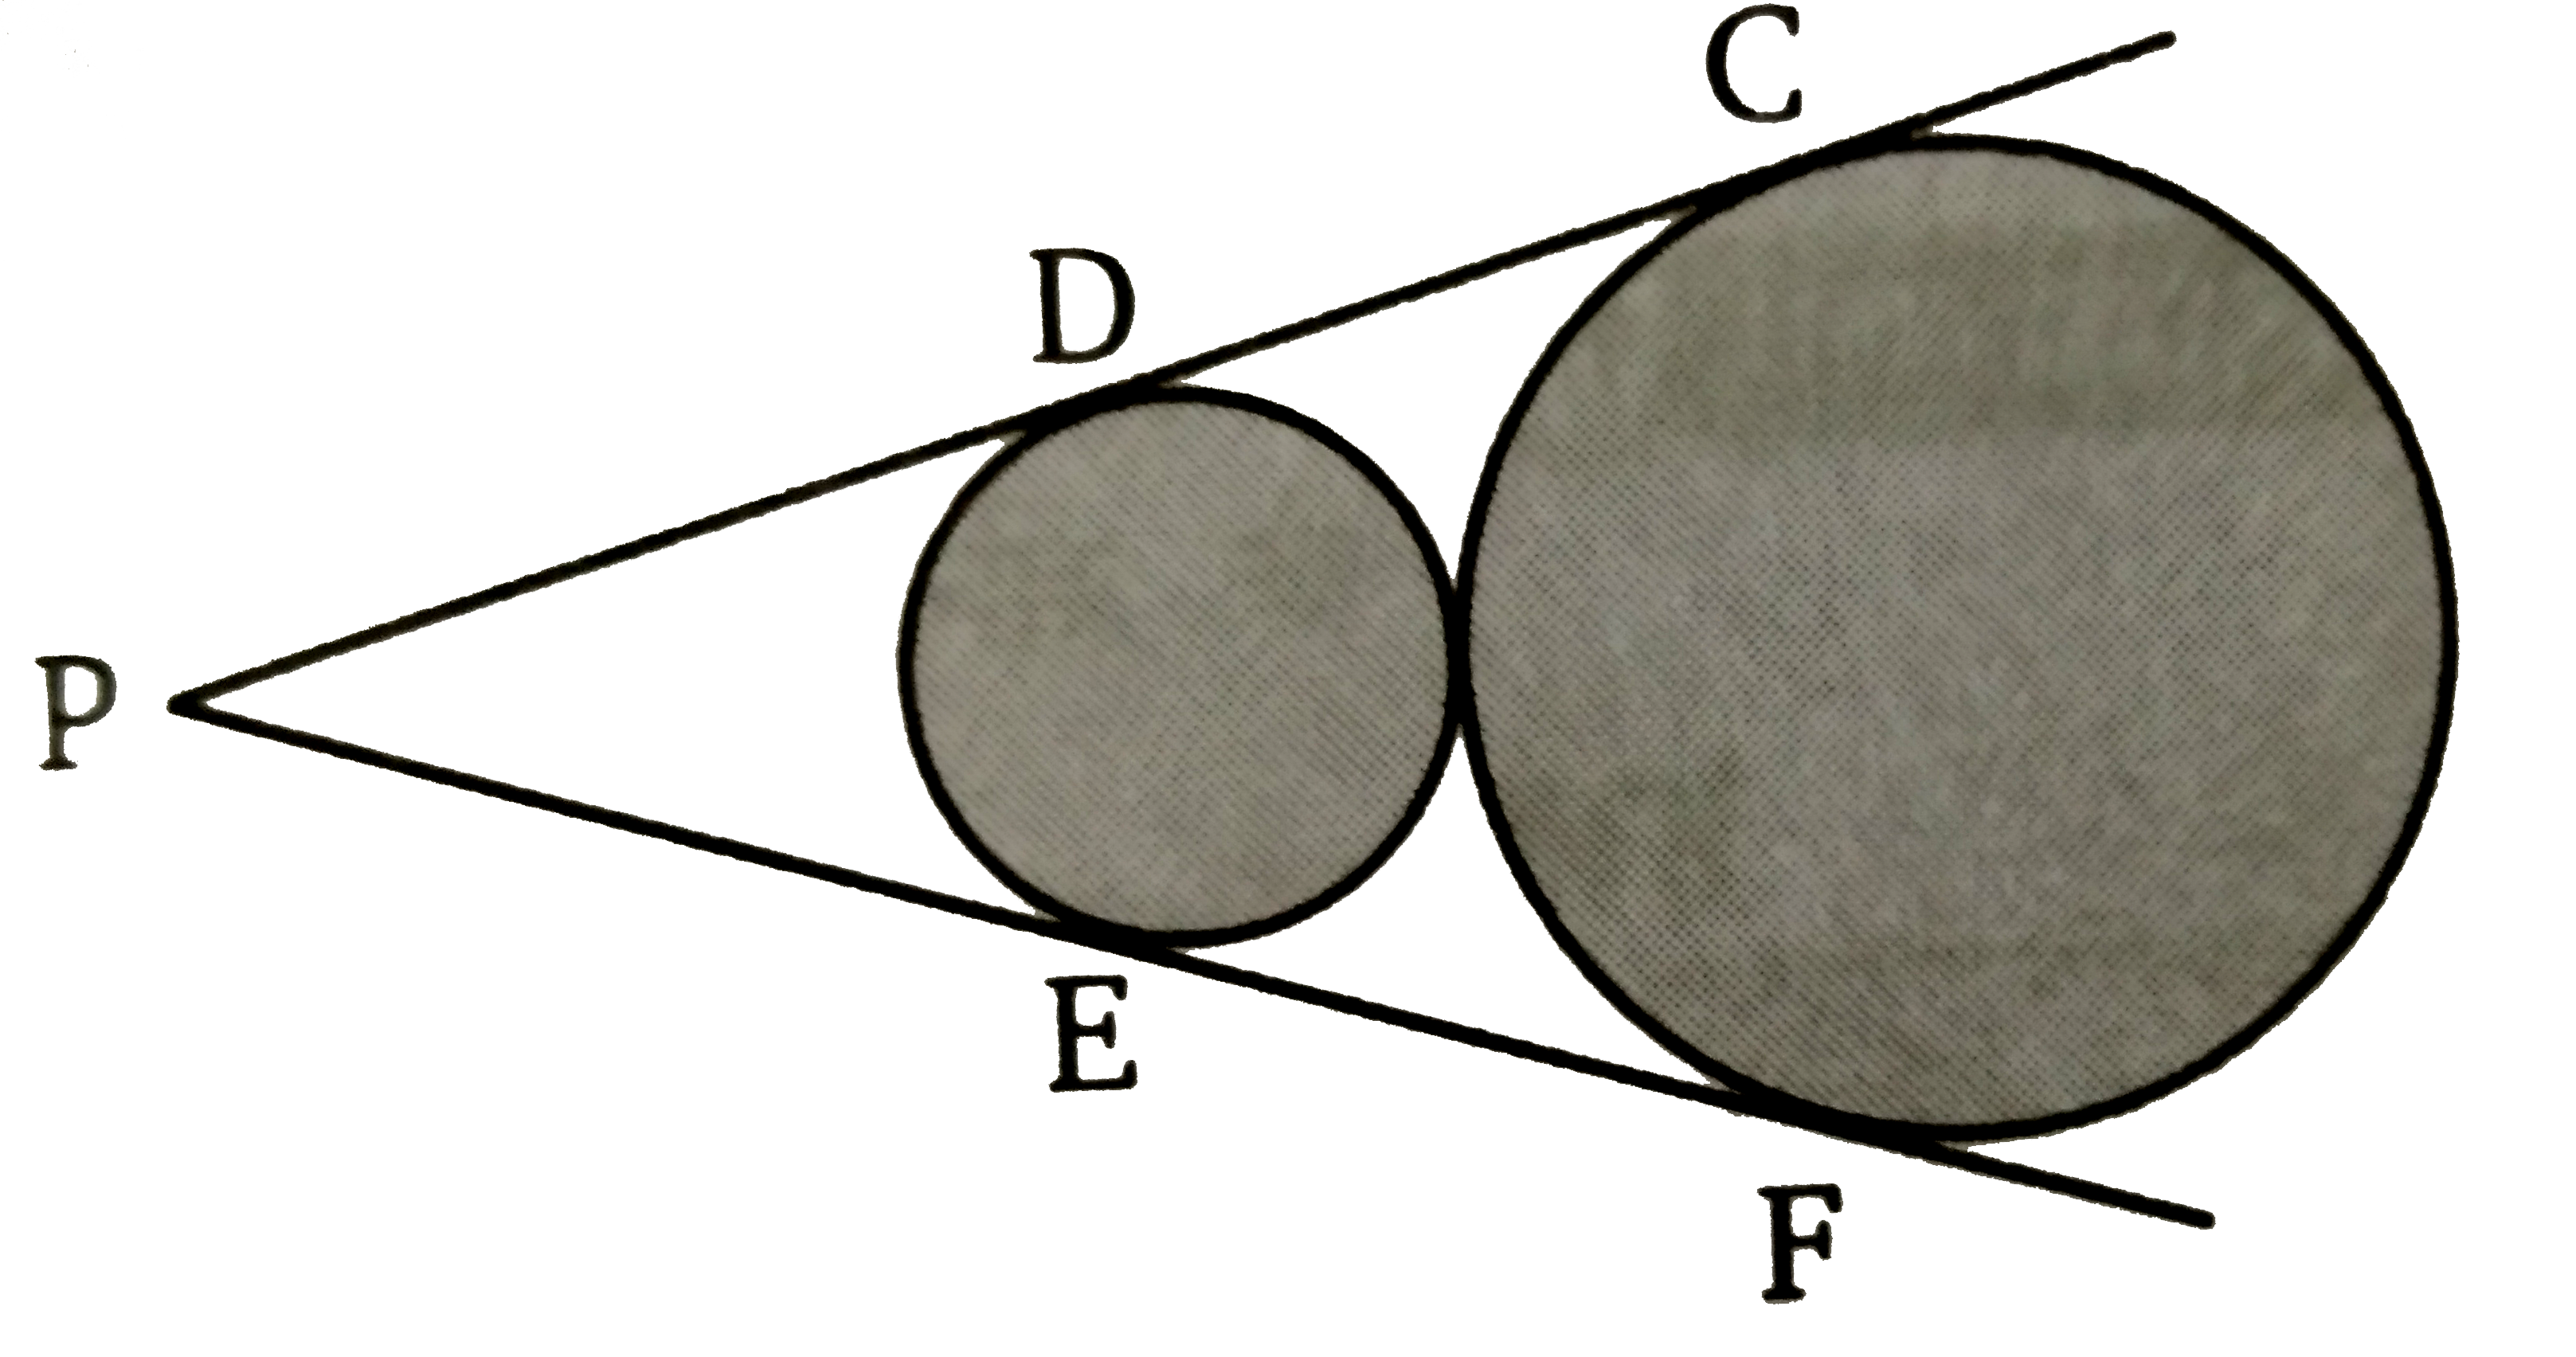 दिये गये चित्र में,  बाह्य स्पर्श करने वाले दो व्रियन कि उभयनिष्ठ अनुस्पर्शी रेखाएँ PDC  तथा  PEF खींची गई है। जो वृतों को क्रमशः D  व C तथा E  व F  पर काटती है। सिद्ध कीजिए कि   DC = EF